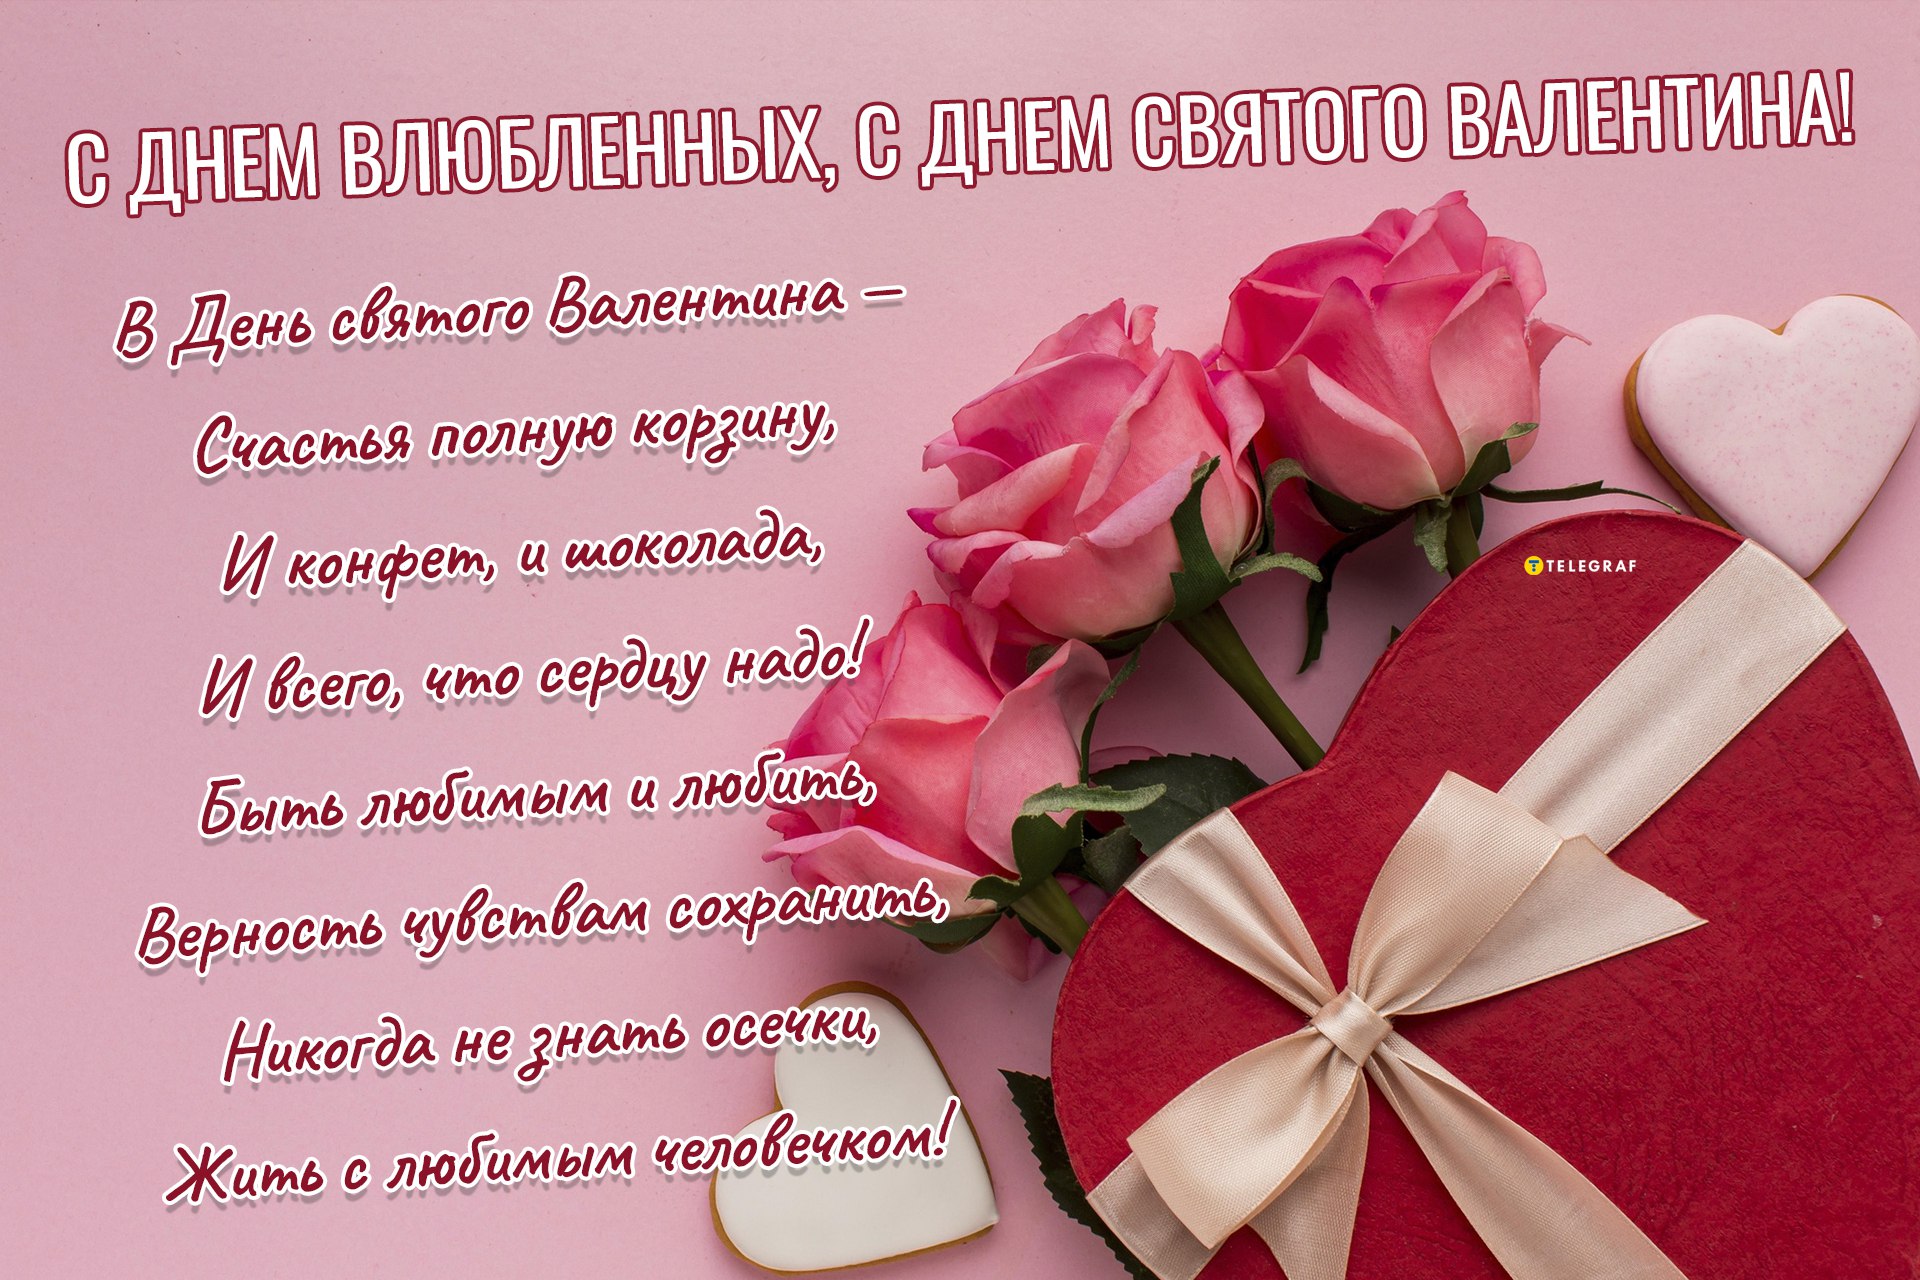 Поздравления с Днем святого Валентина парню, девушке, мужу, жене, подруге: текст, идеи